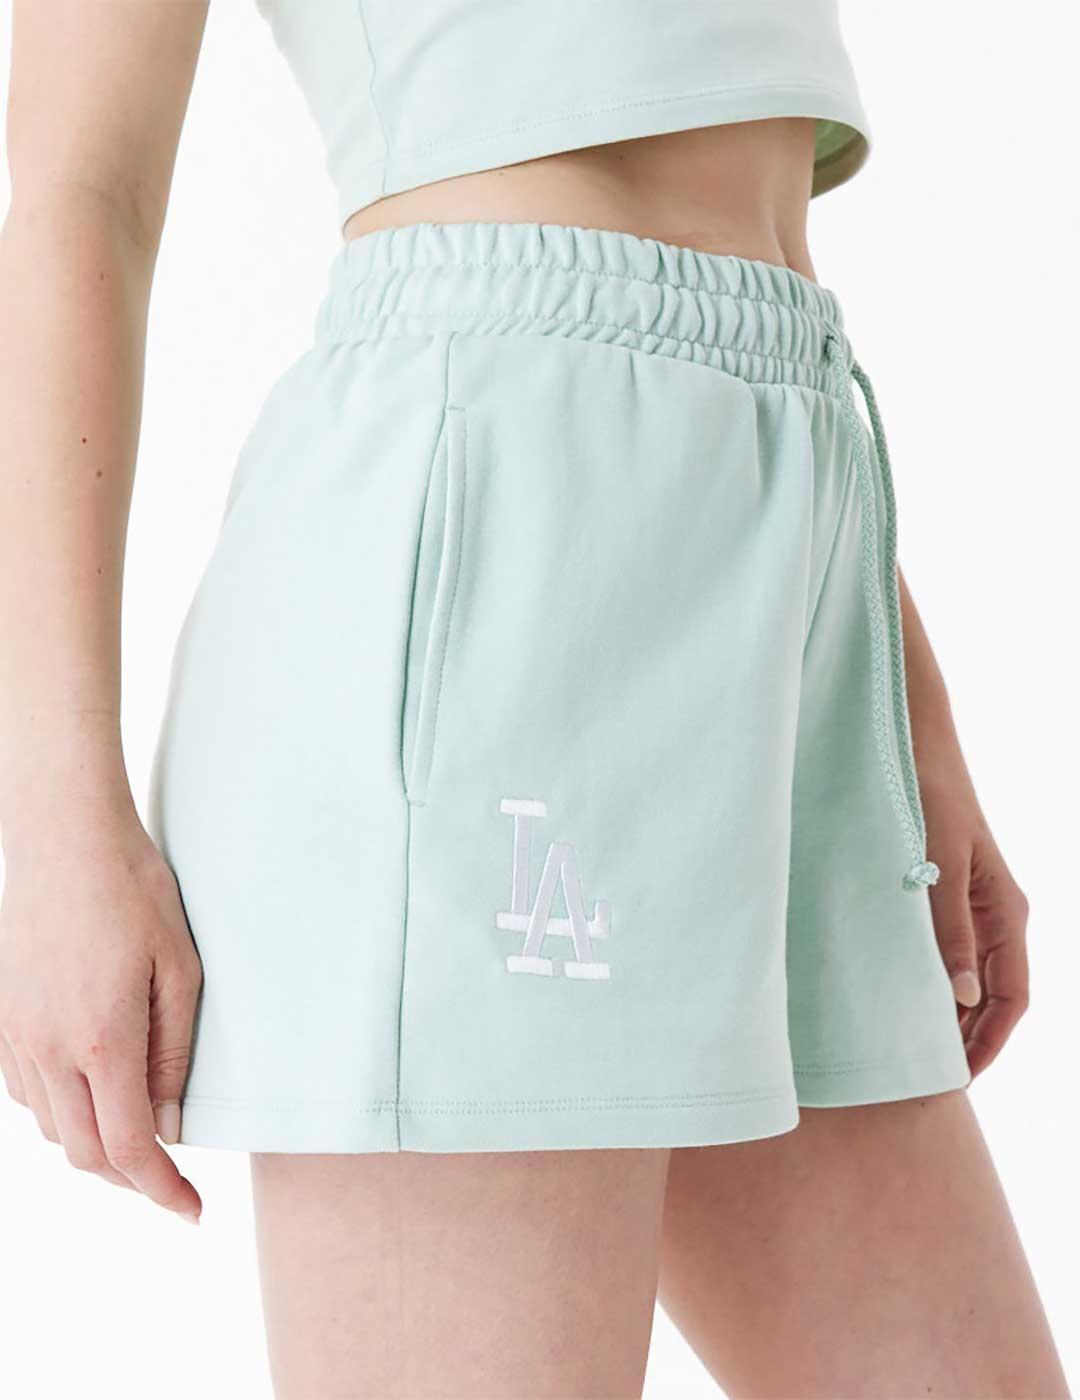 New Era Le Shorts Pantalones cortos verdes para mujer